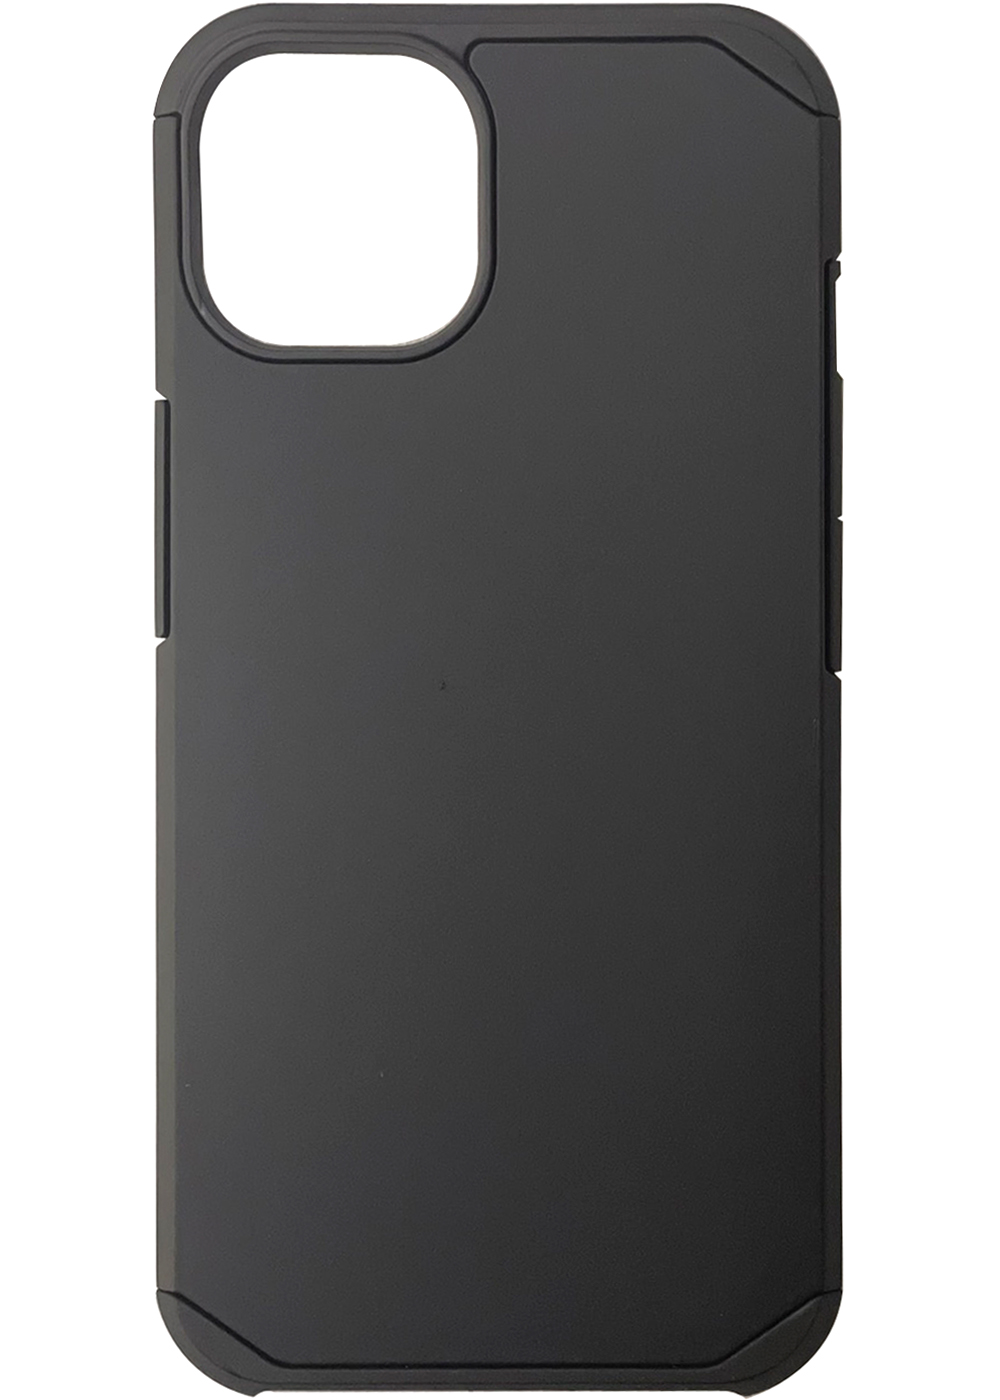 iPhone 12/iPhone 12 Pro Slim Armor Case Black